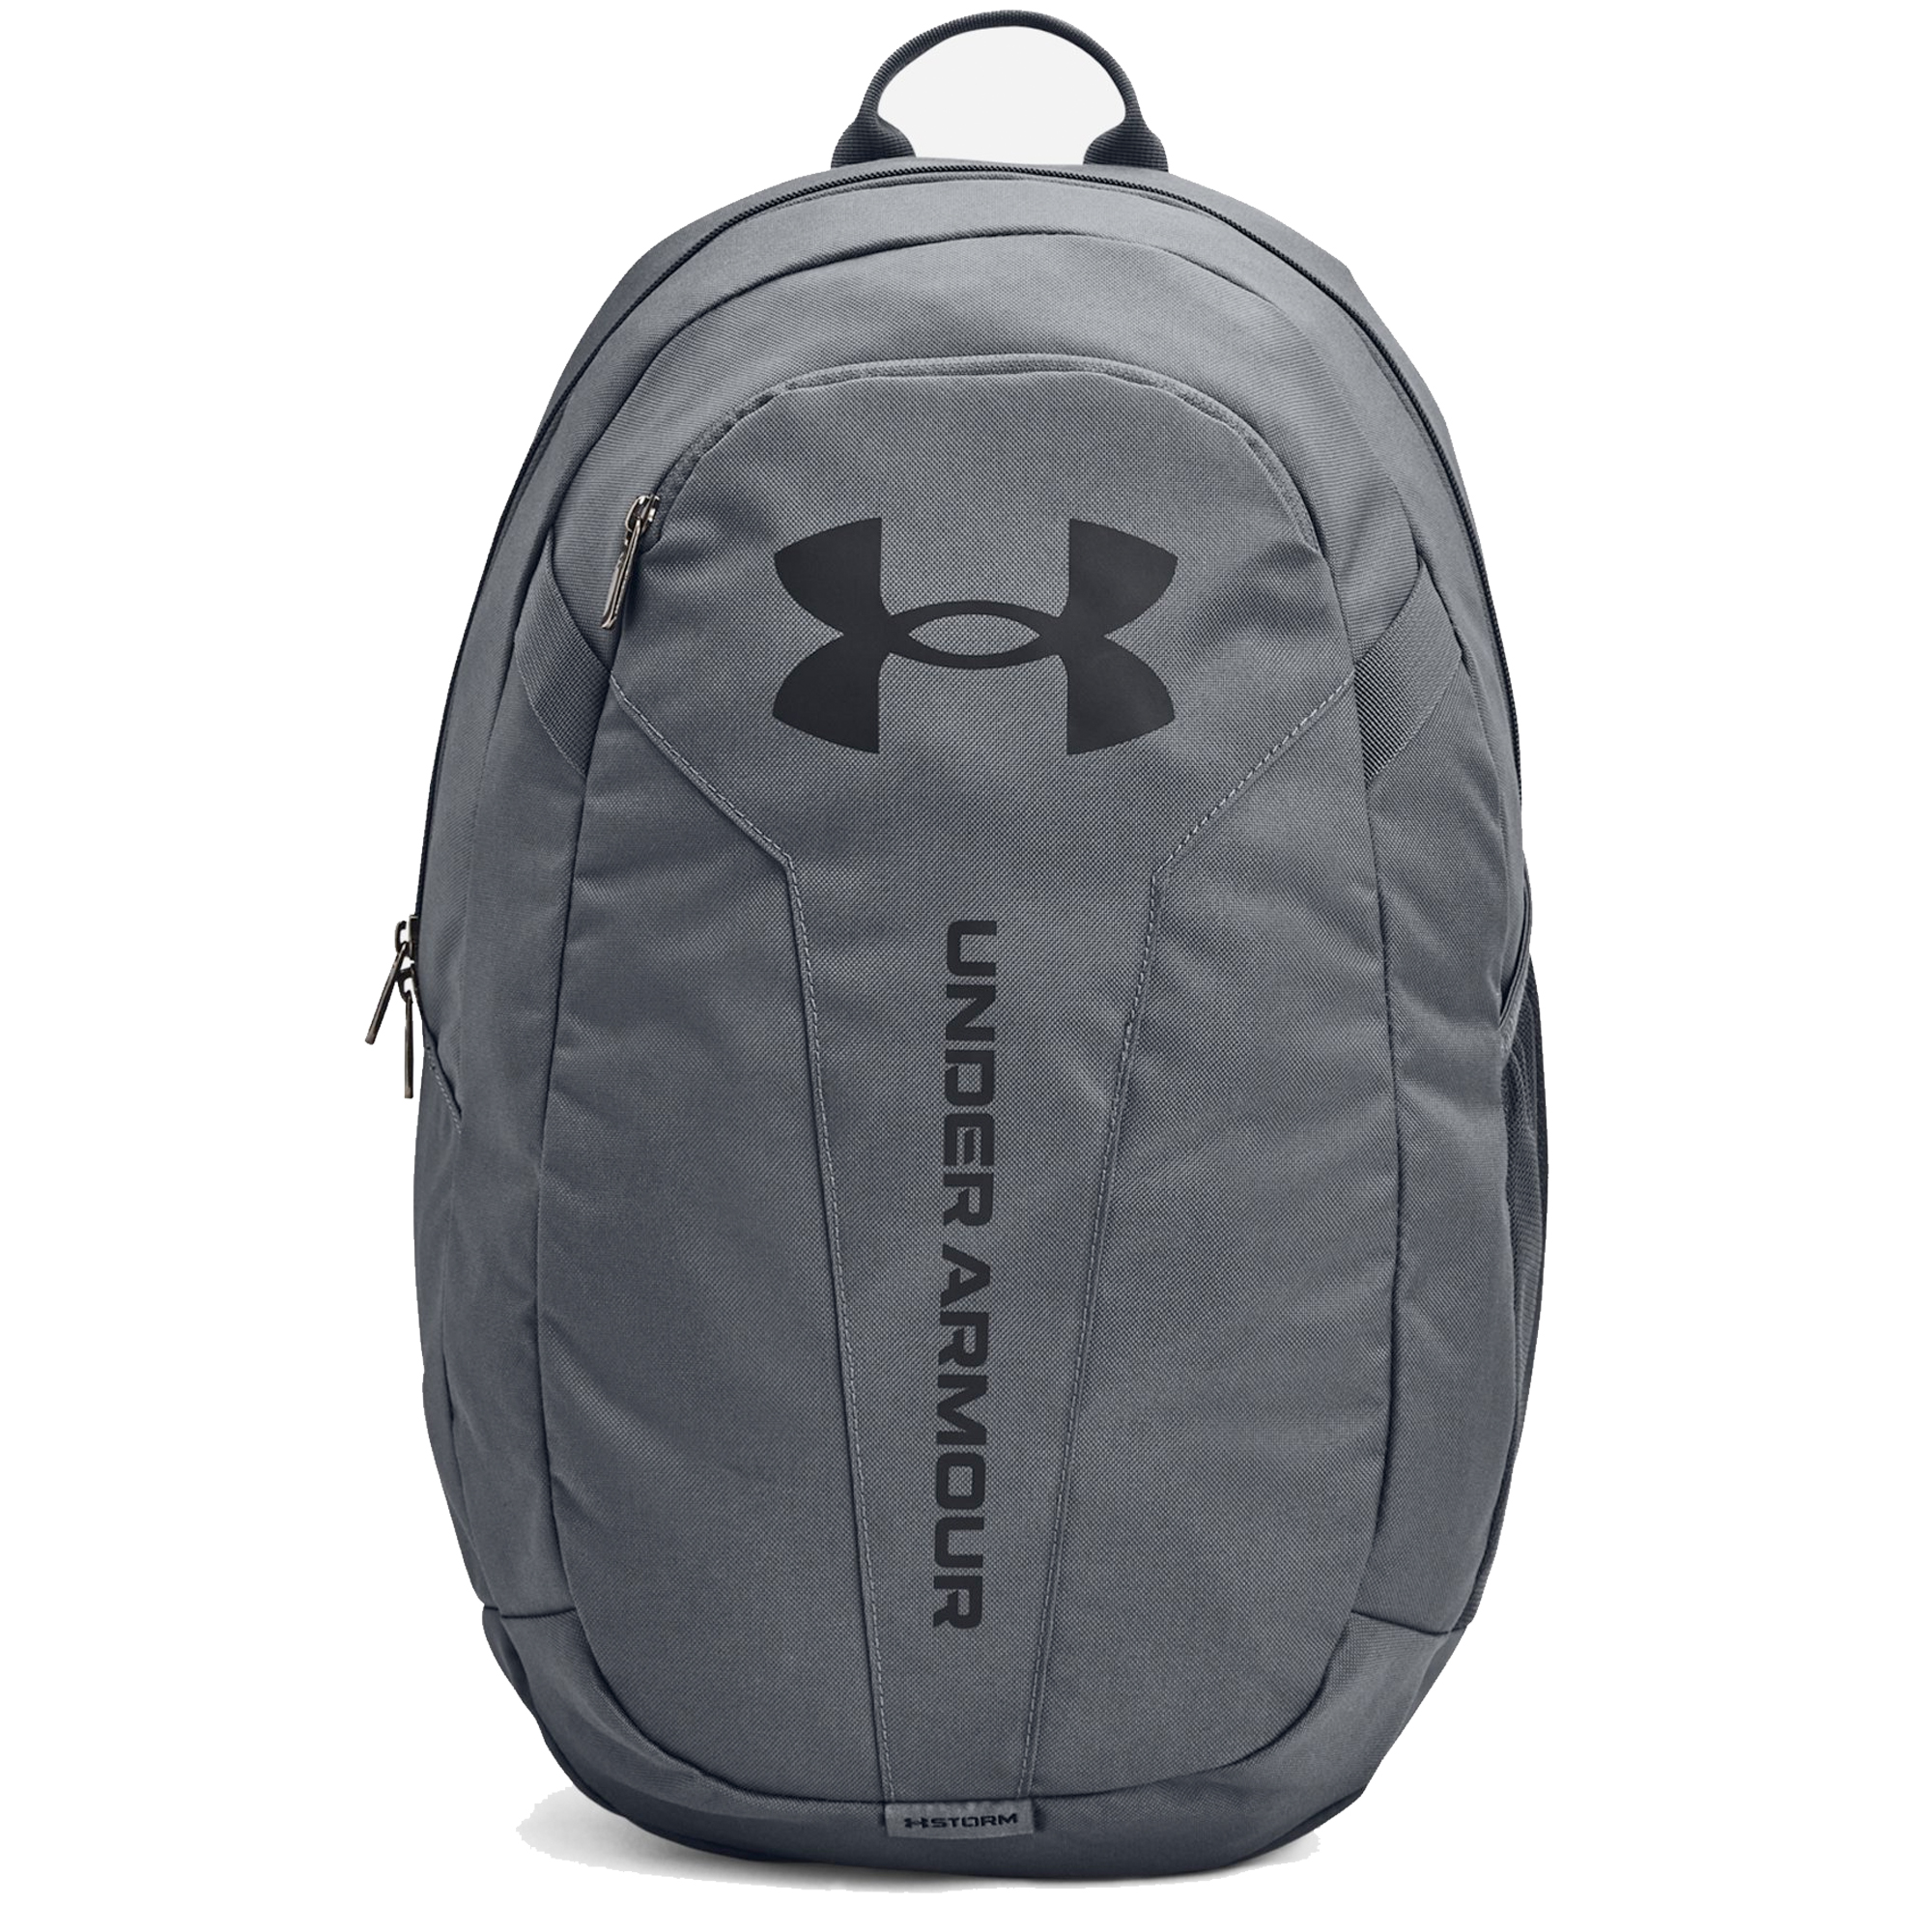 Under Armour Backpack UA Hustle Lite Ruck Gym Travel Rucksack Sports Bag  - Pitch Grey/Black